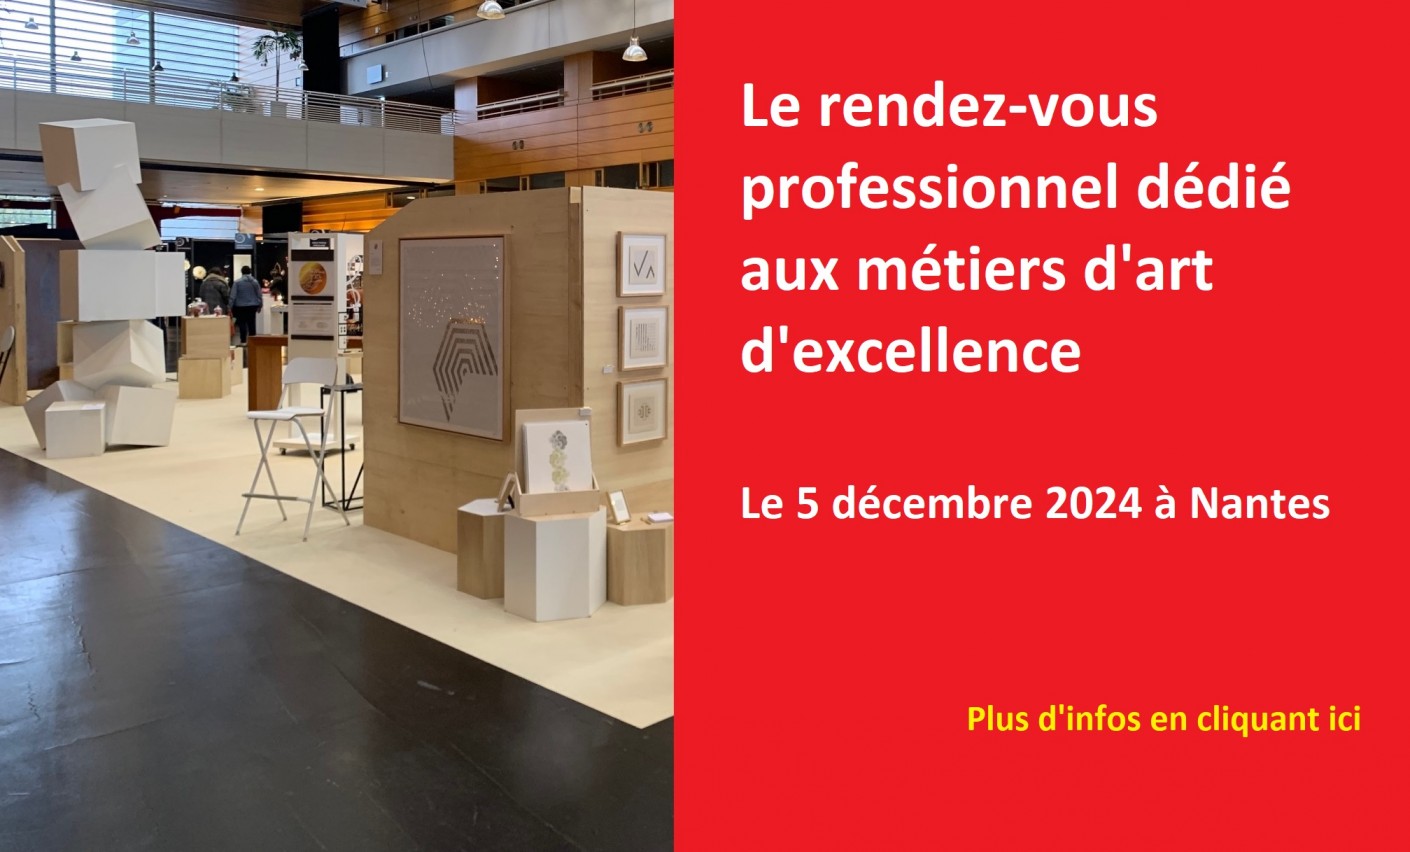 Le rendez-vous professionnel dédié aux métiers d'art d'excellence - Le 5 décembre 2024 à Nantes